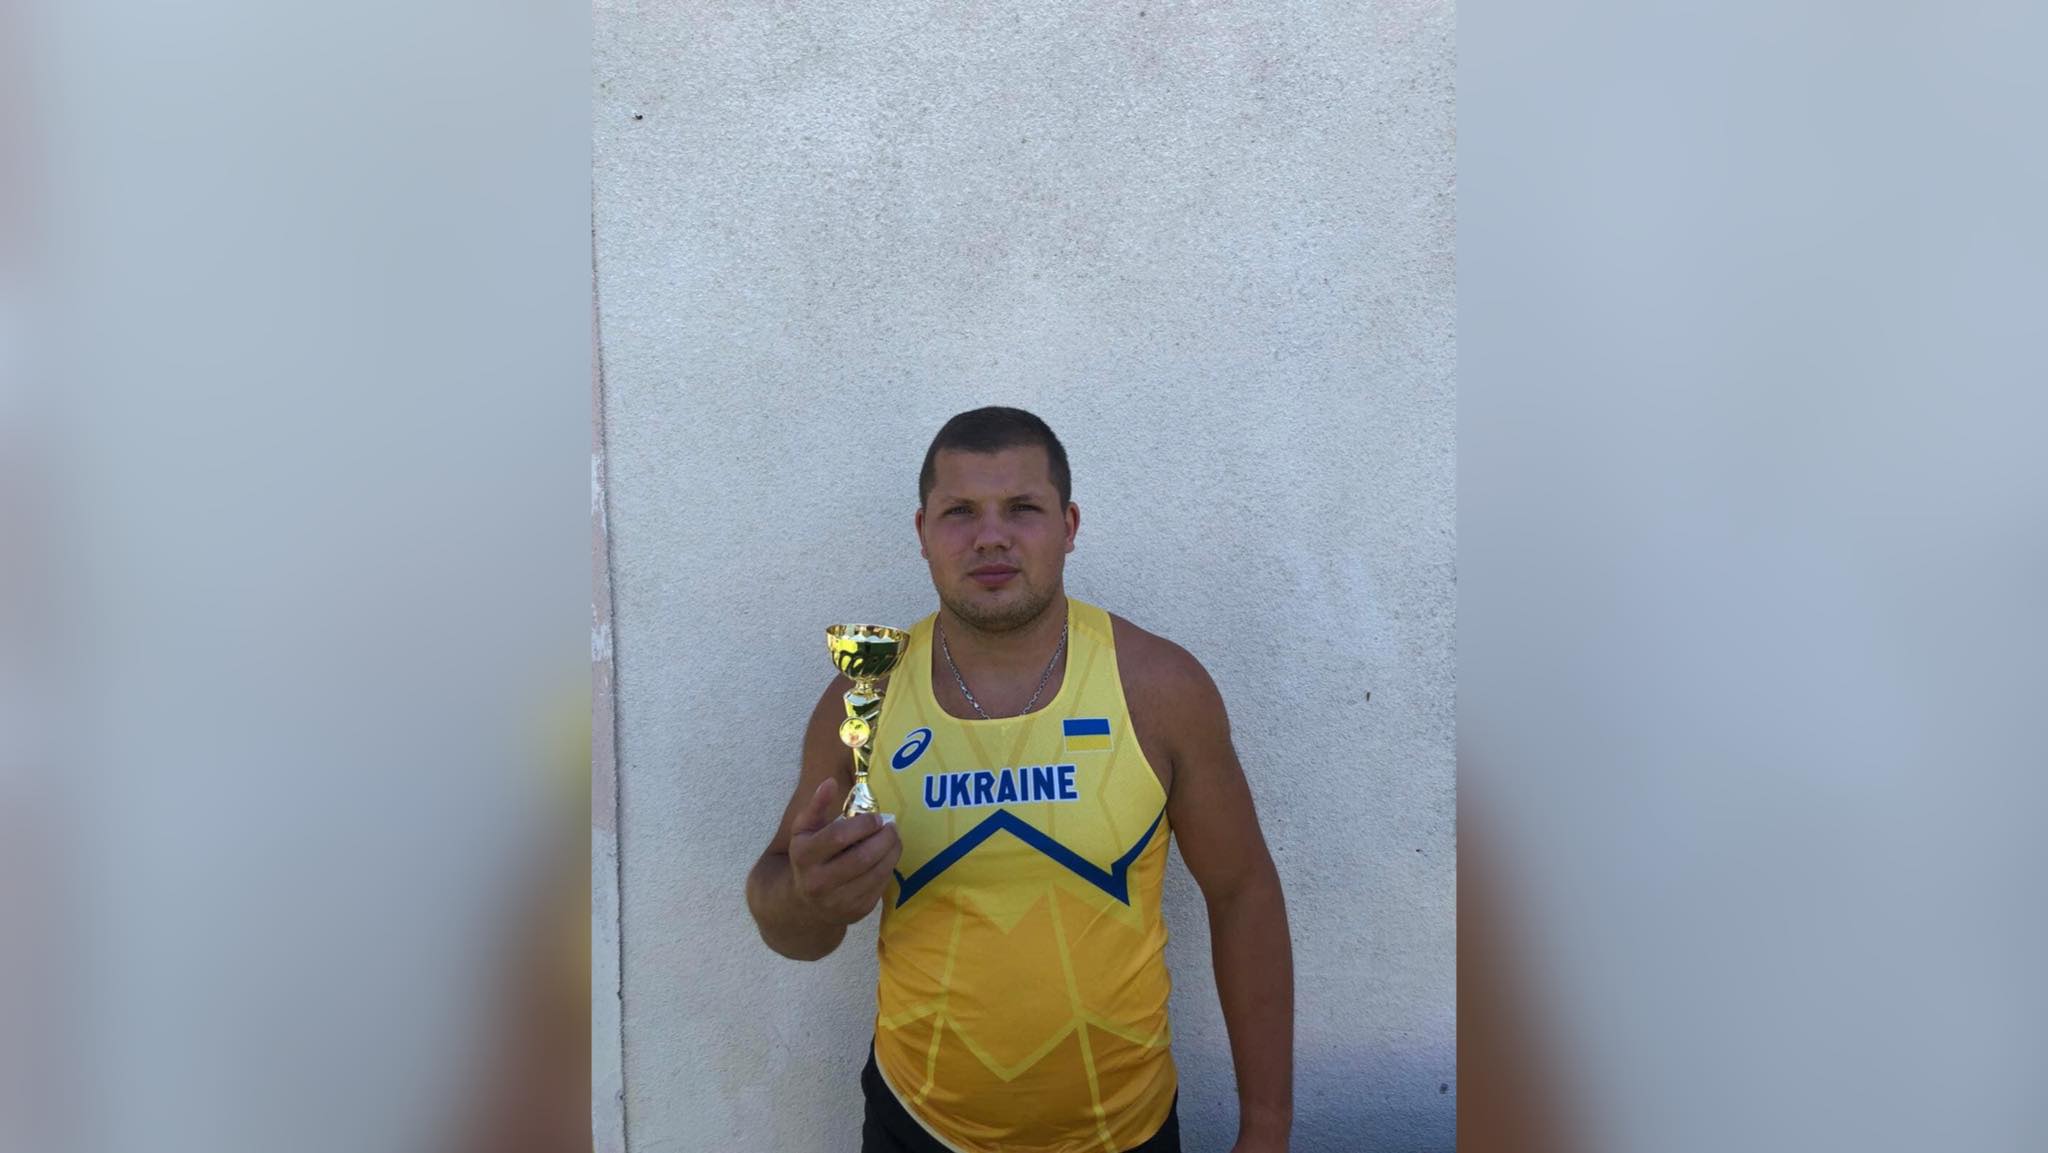 “Золото” і “бронзу” здобули прикарпатські легкоатлети на Кубку України